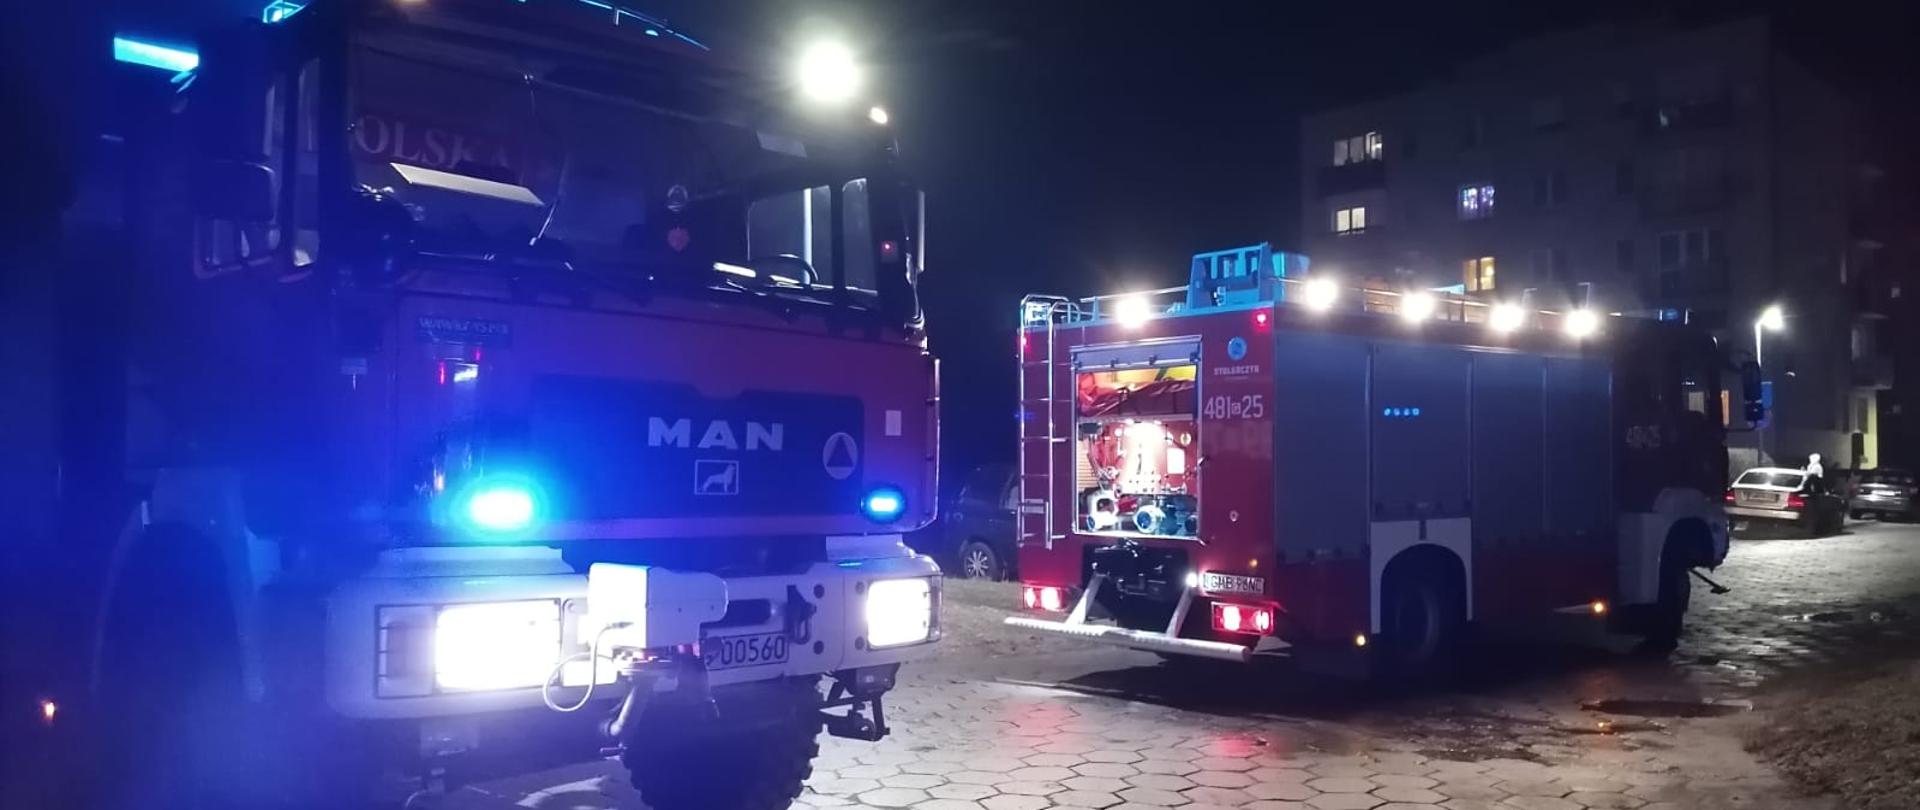 Fotografia przedstawia wozy strażackie z włączonymi sygnałami świetlnymi na jednym z osiedli w Malborku podczas akcji gaśniczej. W oddali widać blok mieszkalny na tle nocnego nieba.